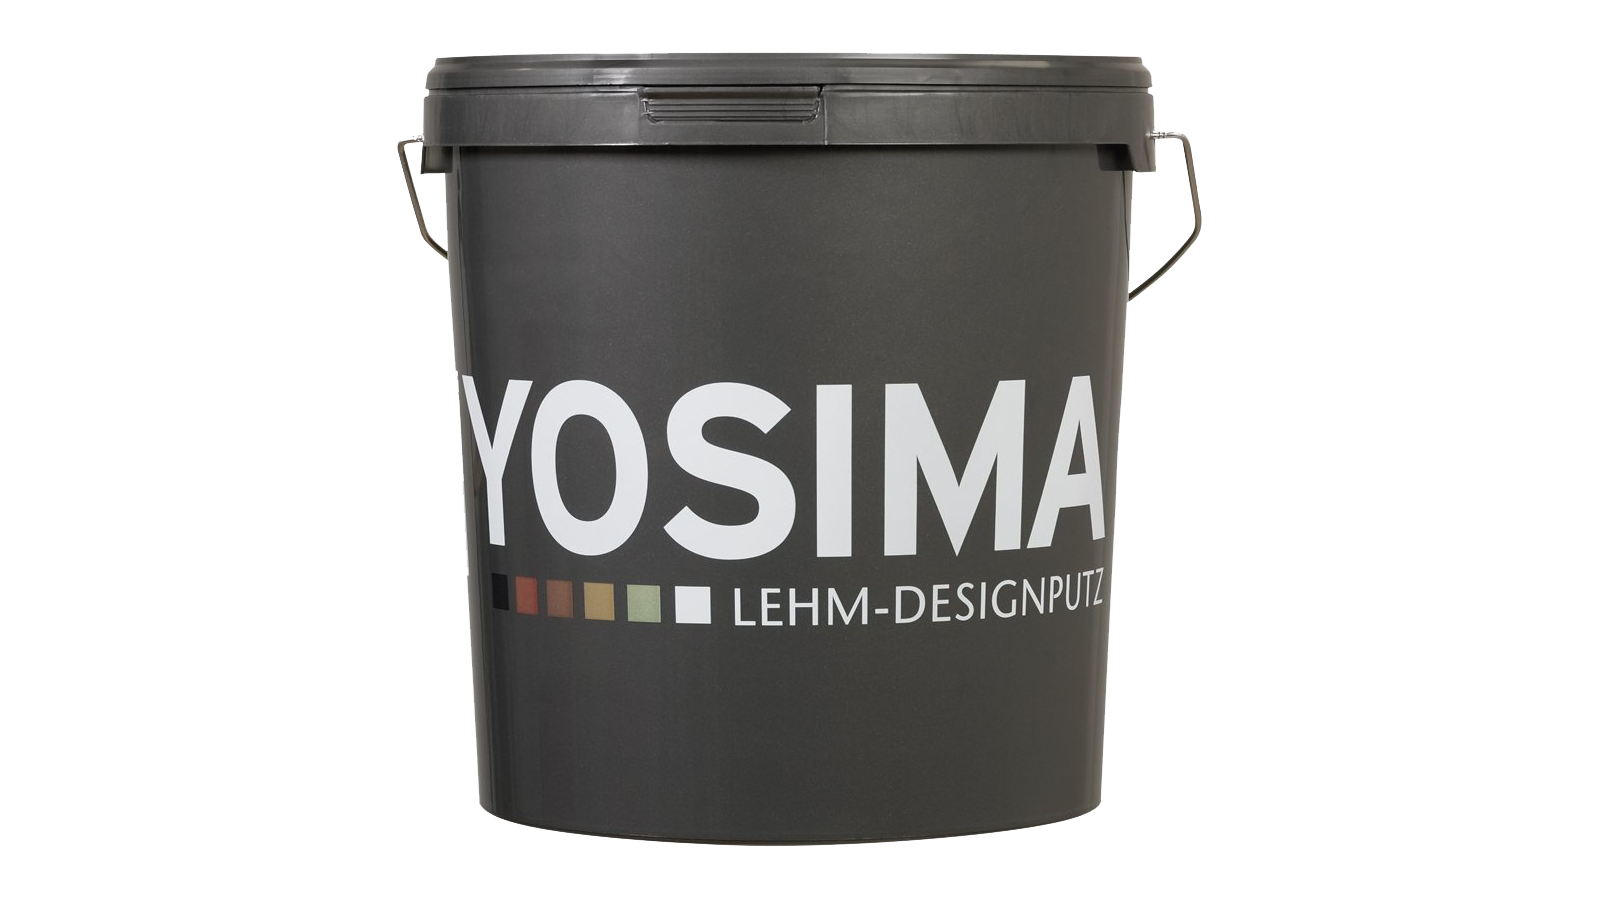 YOSIMA Lehm-Designputz Grundfarbtöne